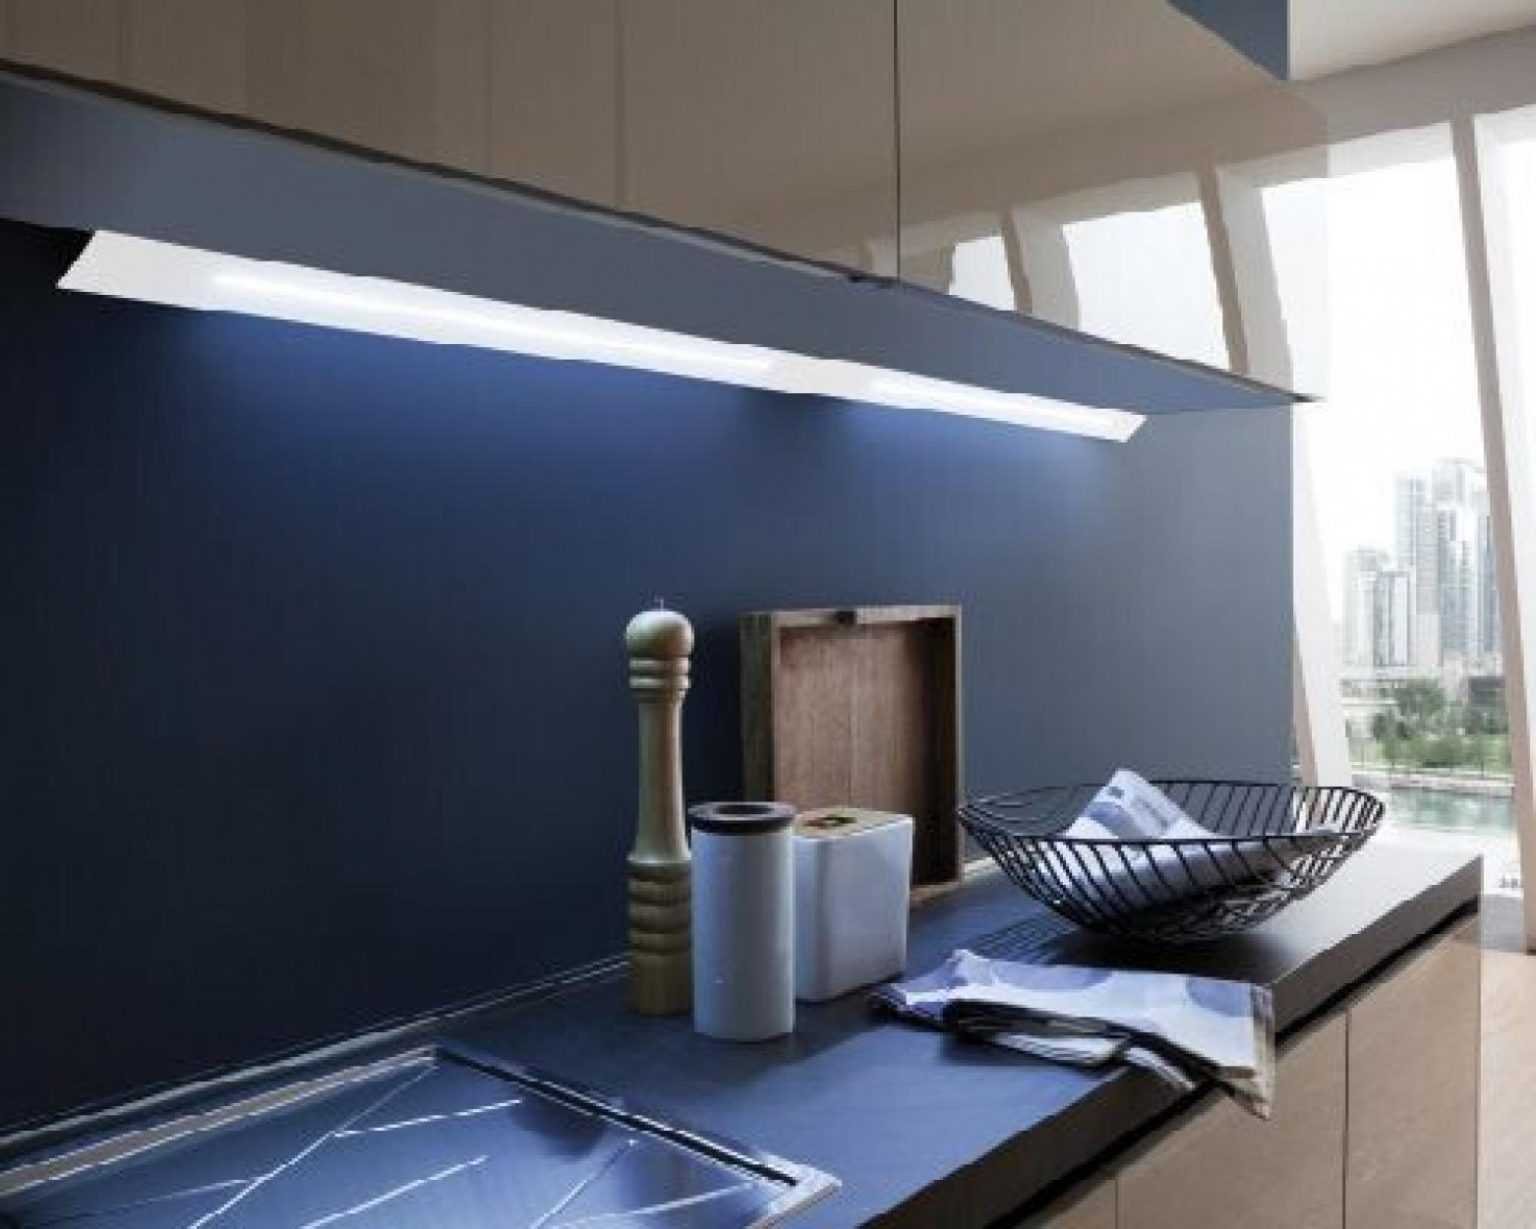 накладная подсветка для кухни под шкафы